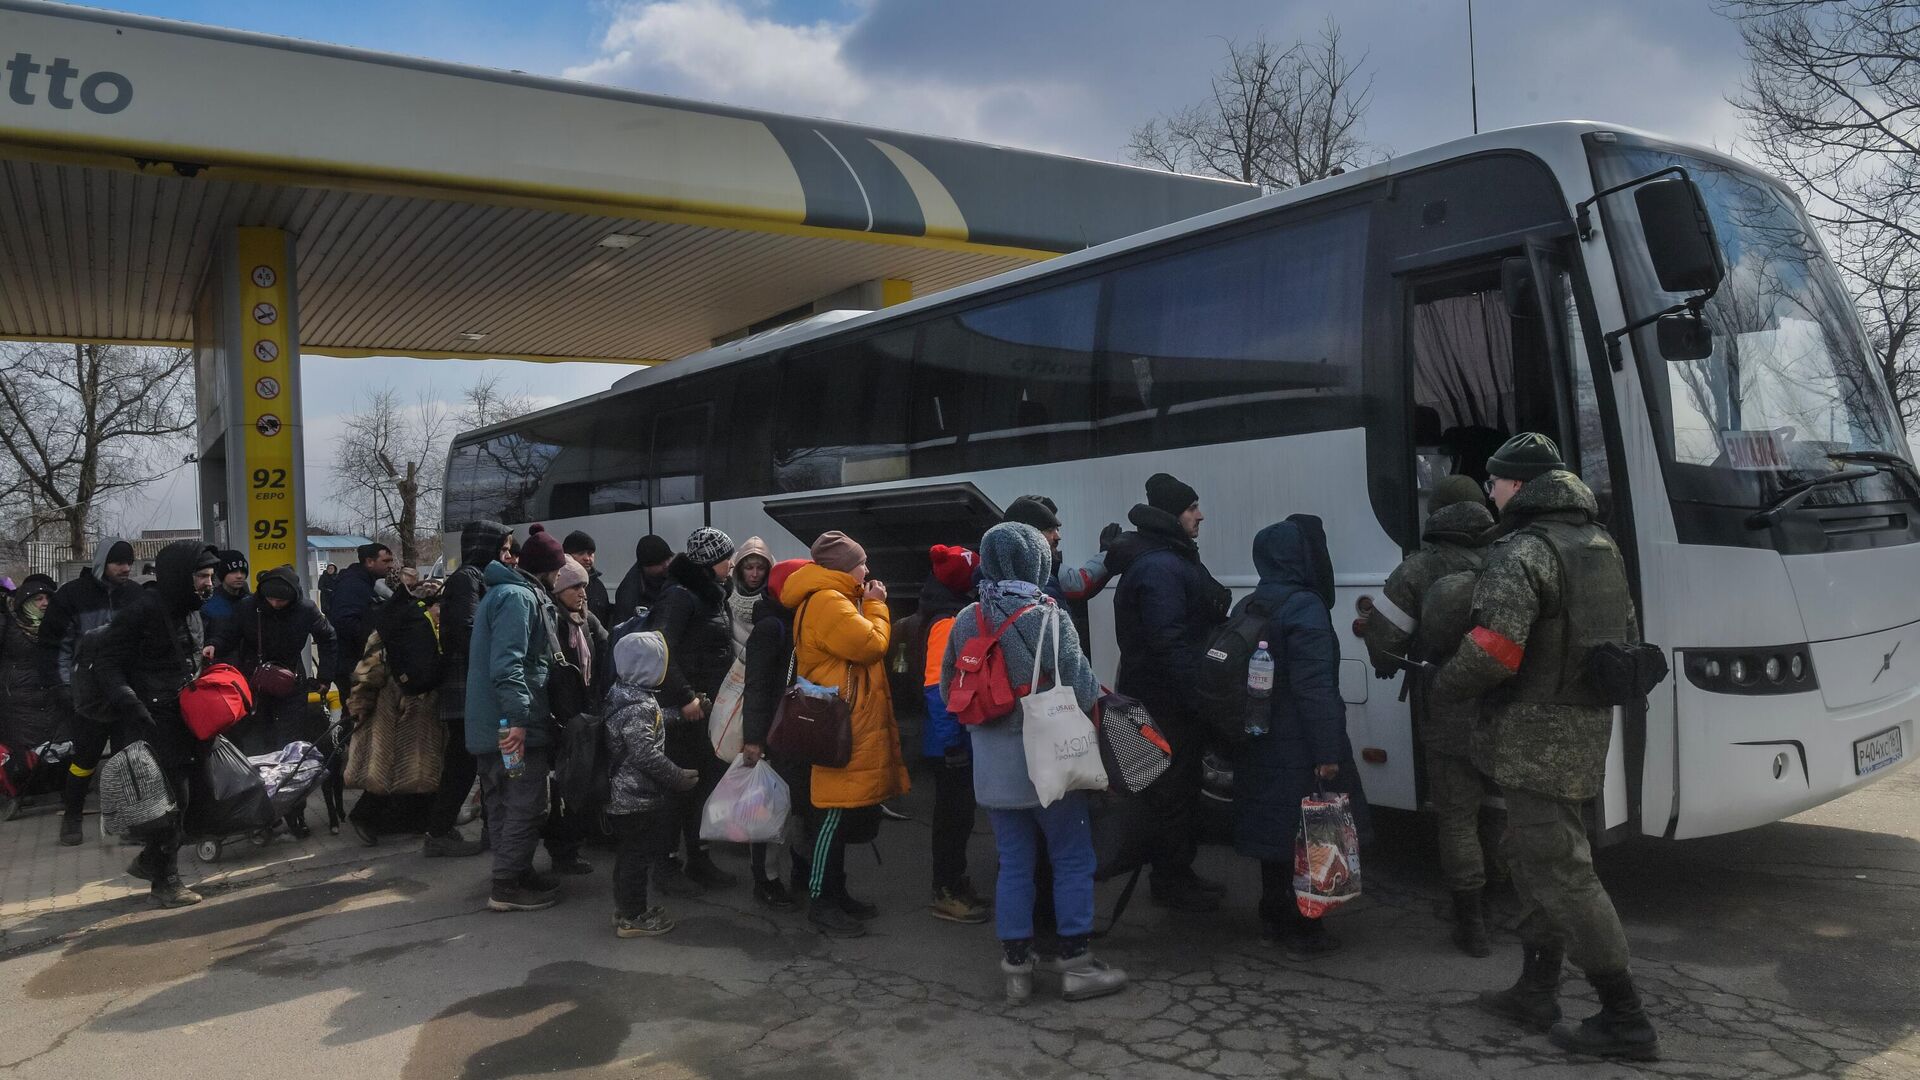 Беженцы готовятся к посадке в автобус на Запорожском шоссе в Мариуполе  - РИА Новости, 1920, 19.03.2022